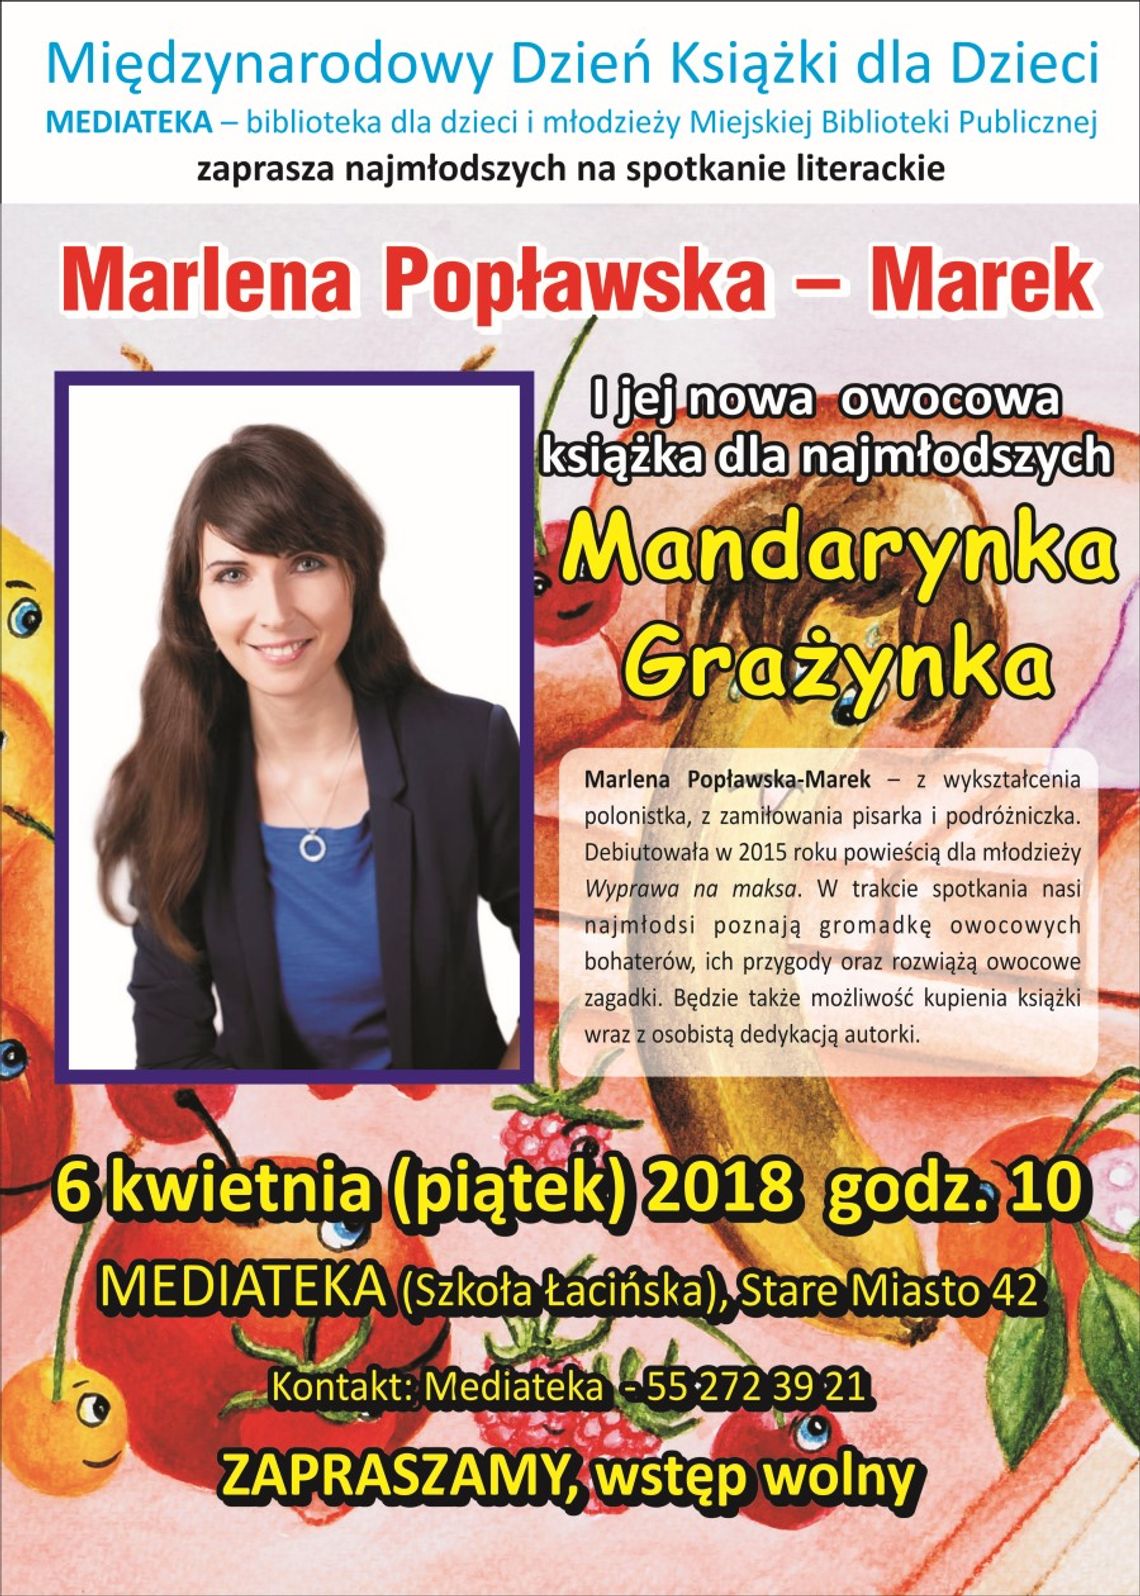 Międzynarodowy Dzień Książki dla Dzieci z pisarką Marleną Popławską-Marek.